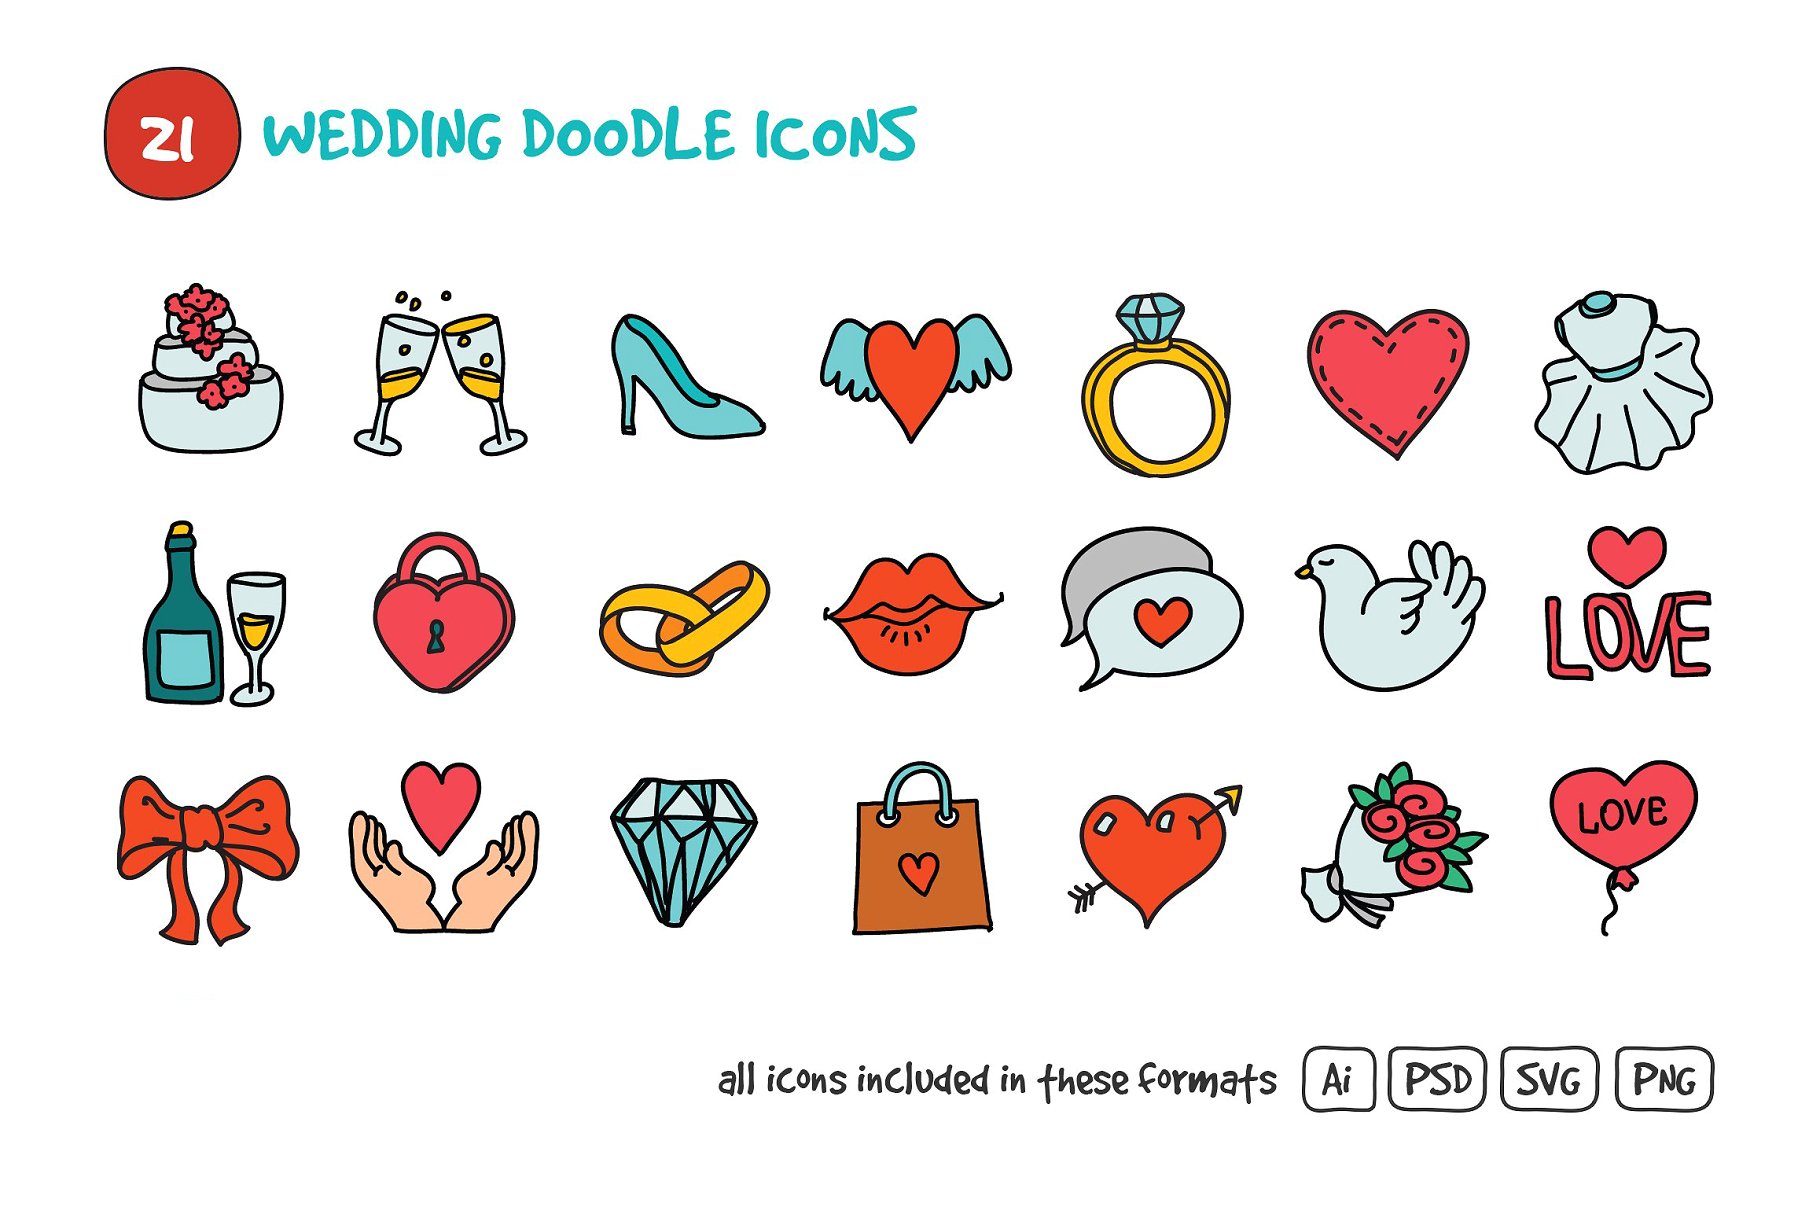 婚礼元素图标素材 Wedding Doodle Icons